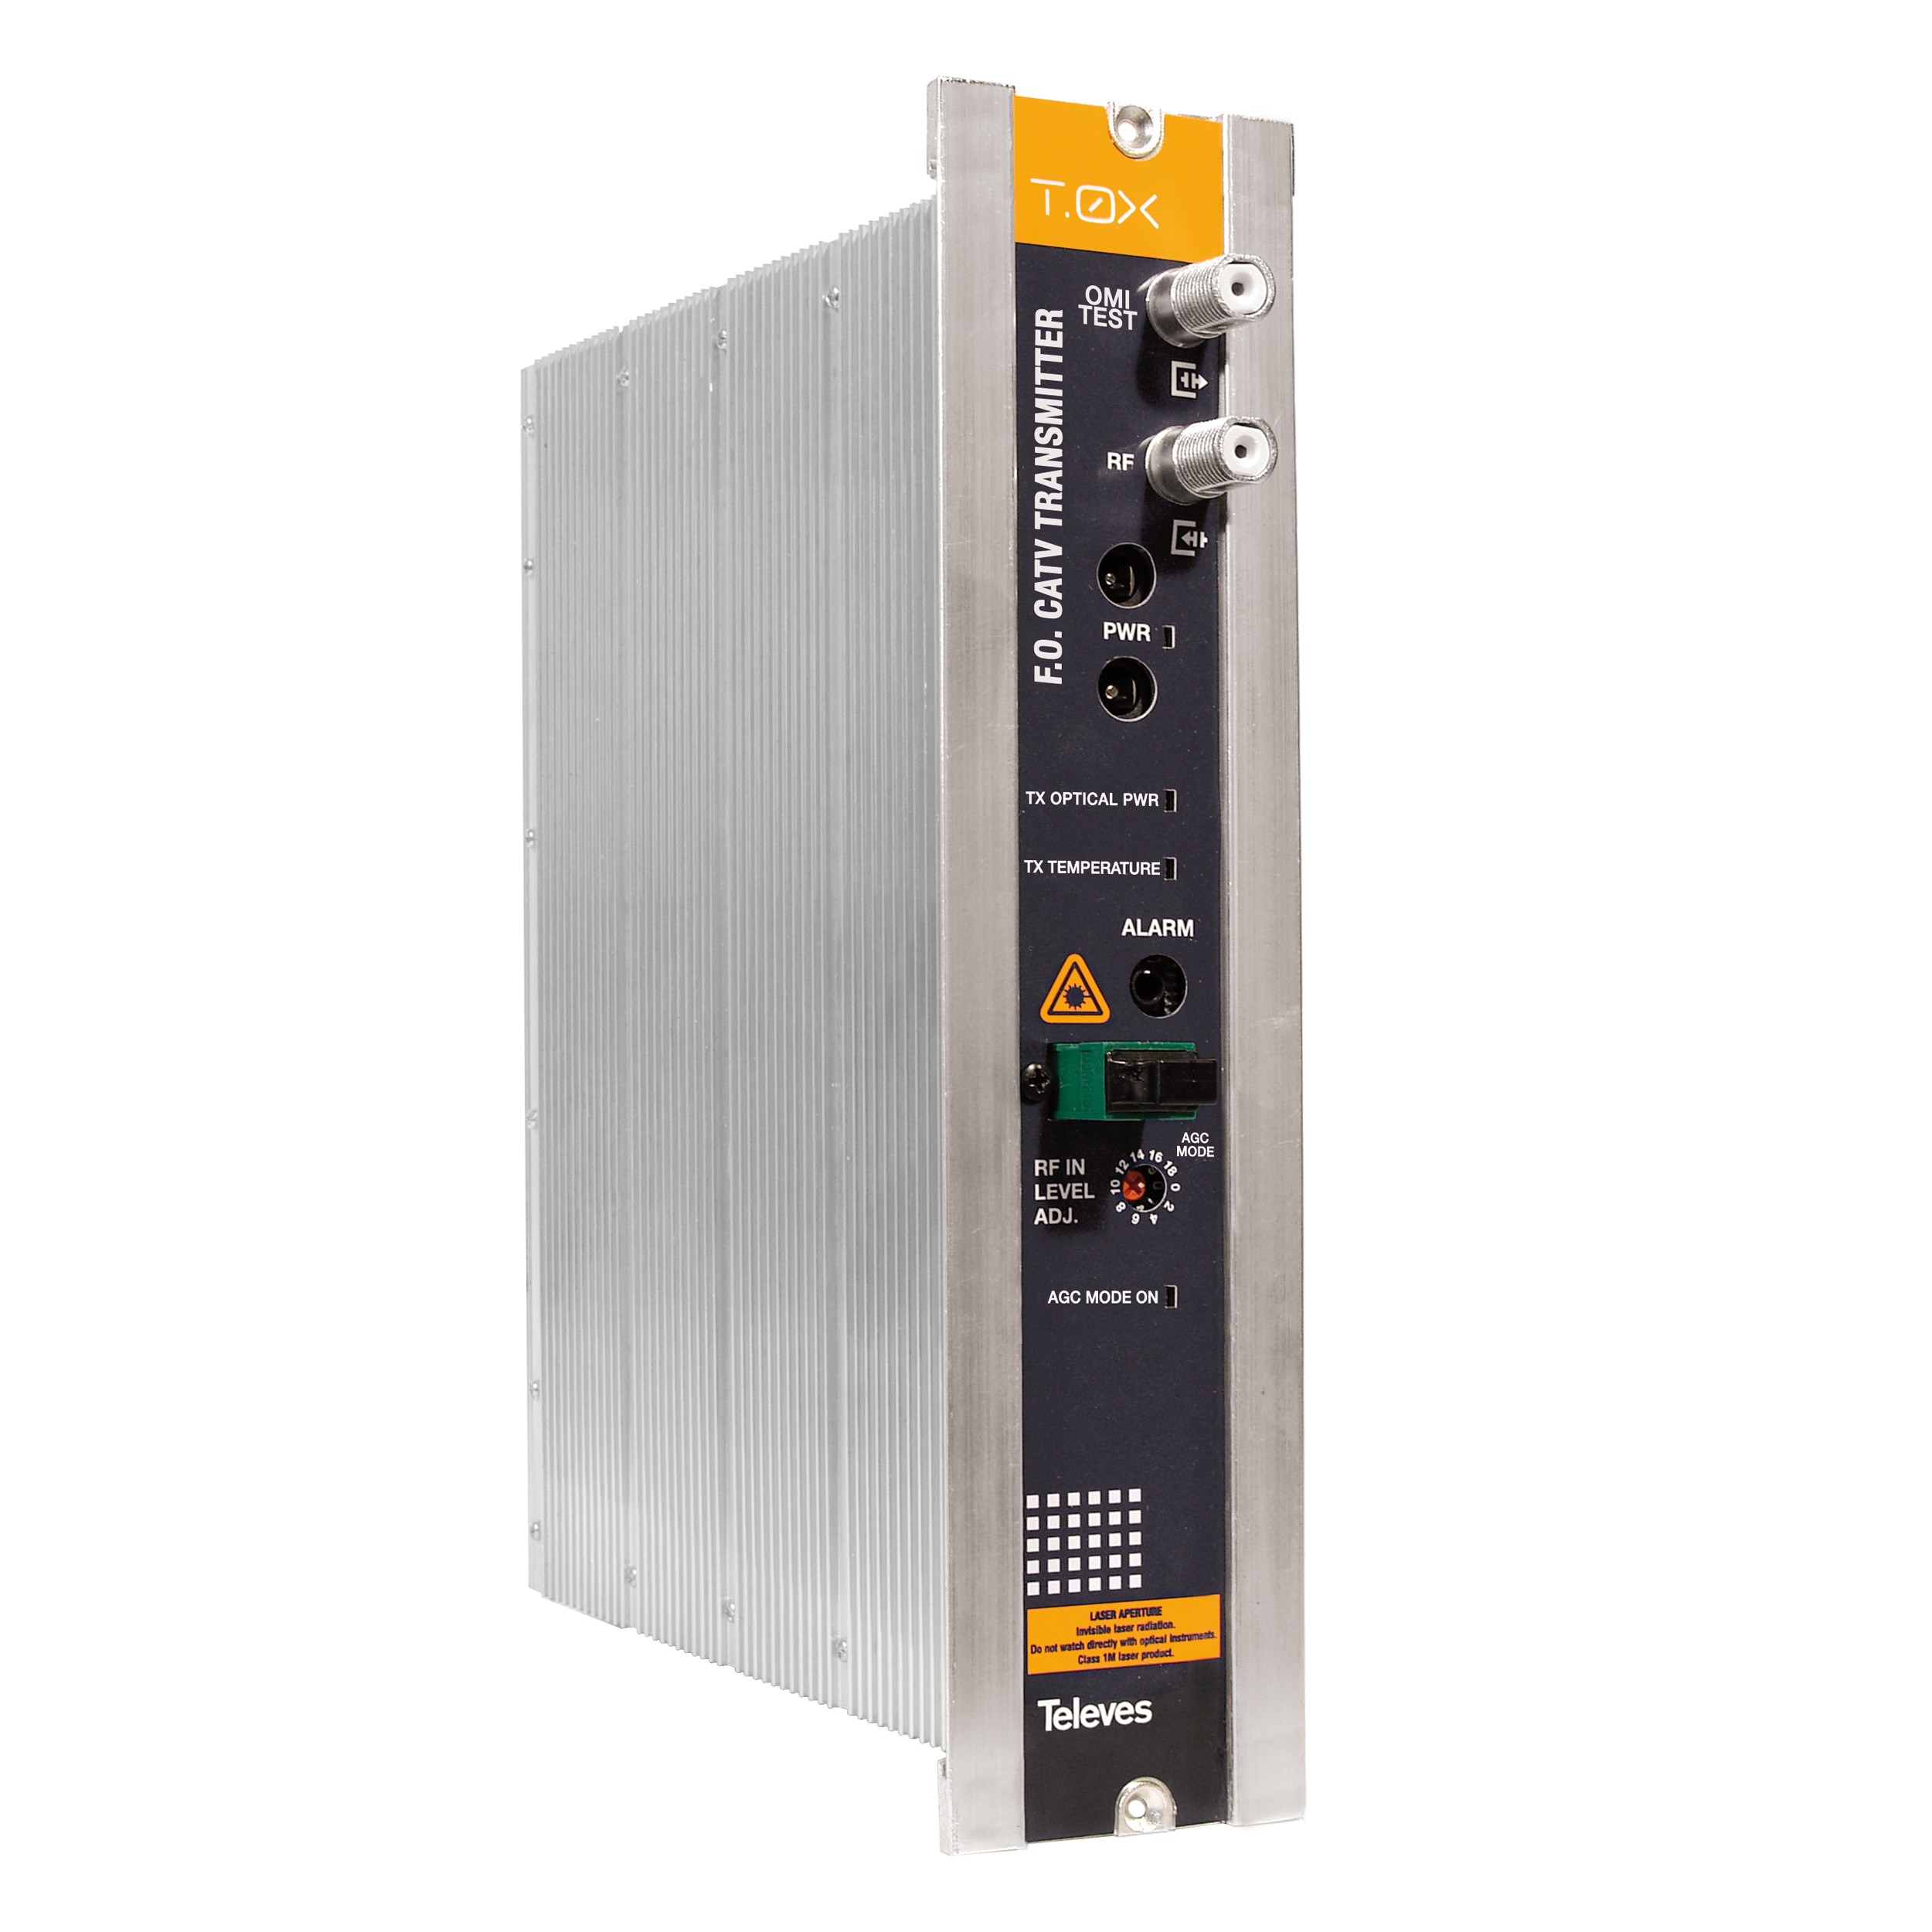 T-0X - optischer Sender 47-1100MHz; opt.Leistung 10dBm mit AGC und Temperatur-Überwachung